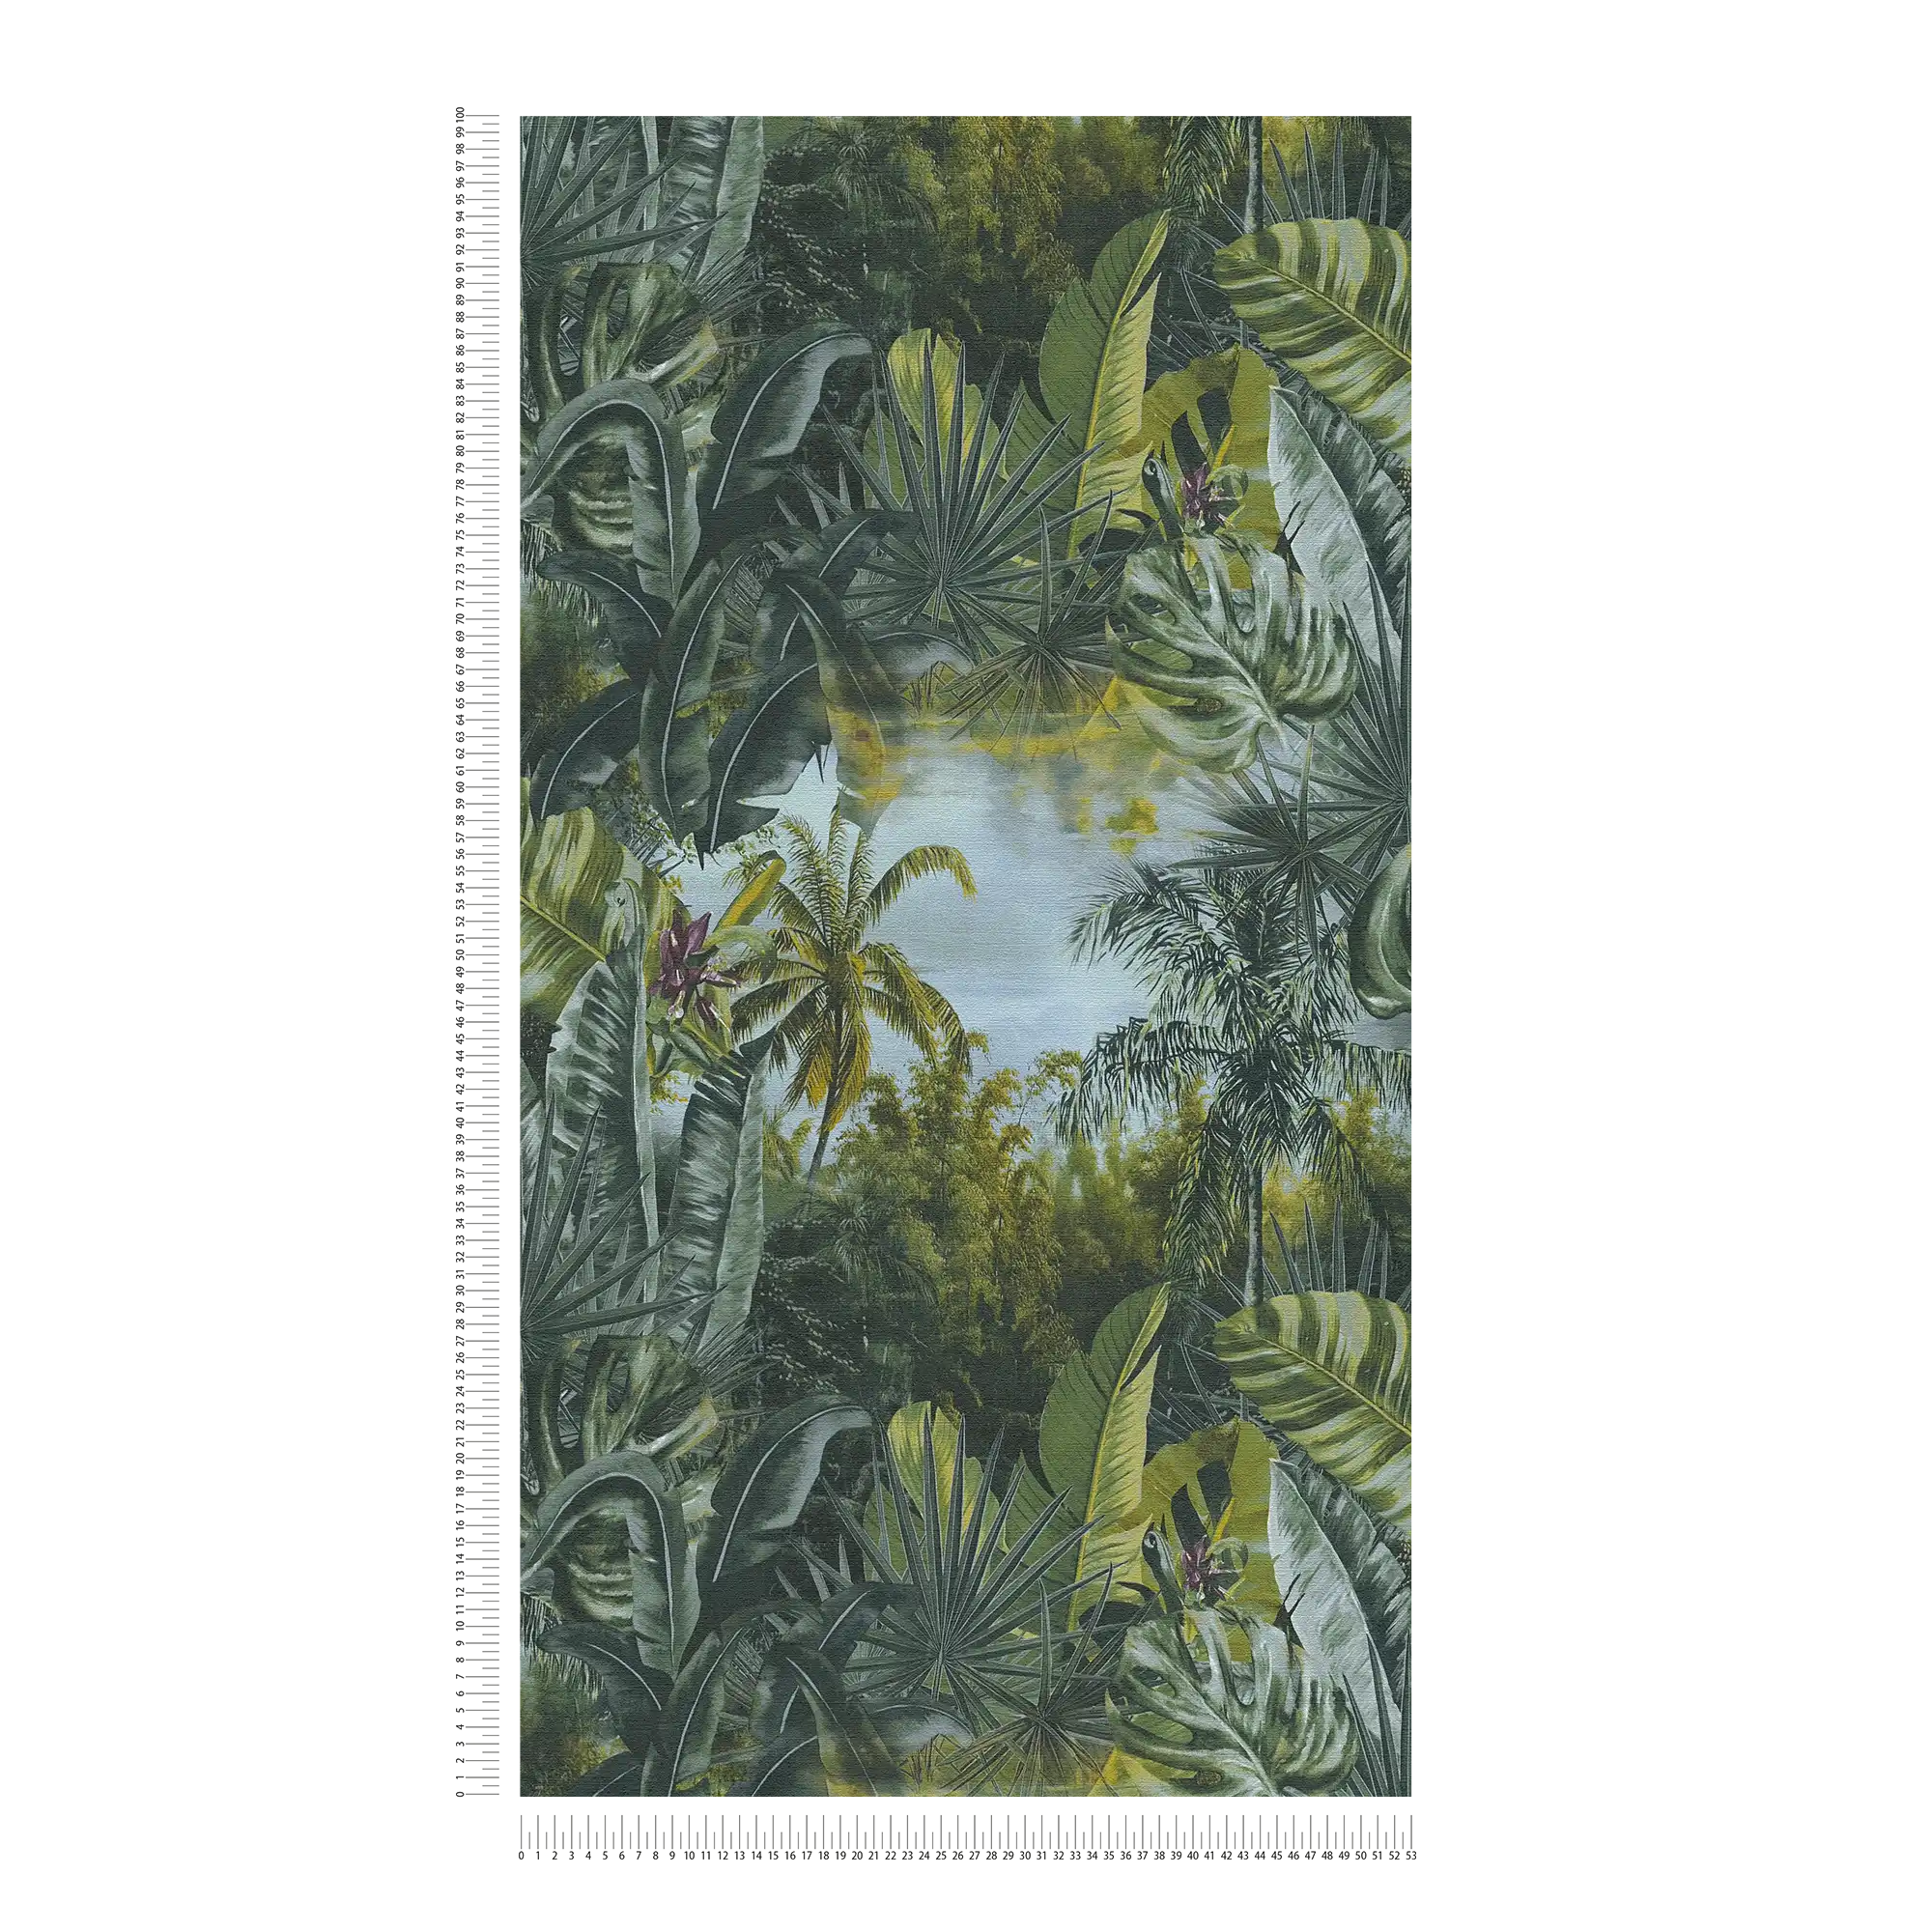             Vliesbehang jungle met palmen & bladeren design - groen
        